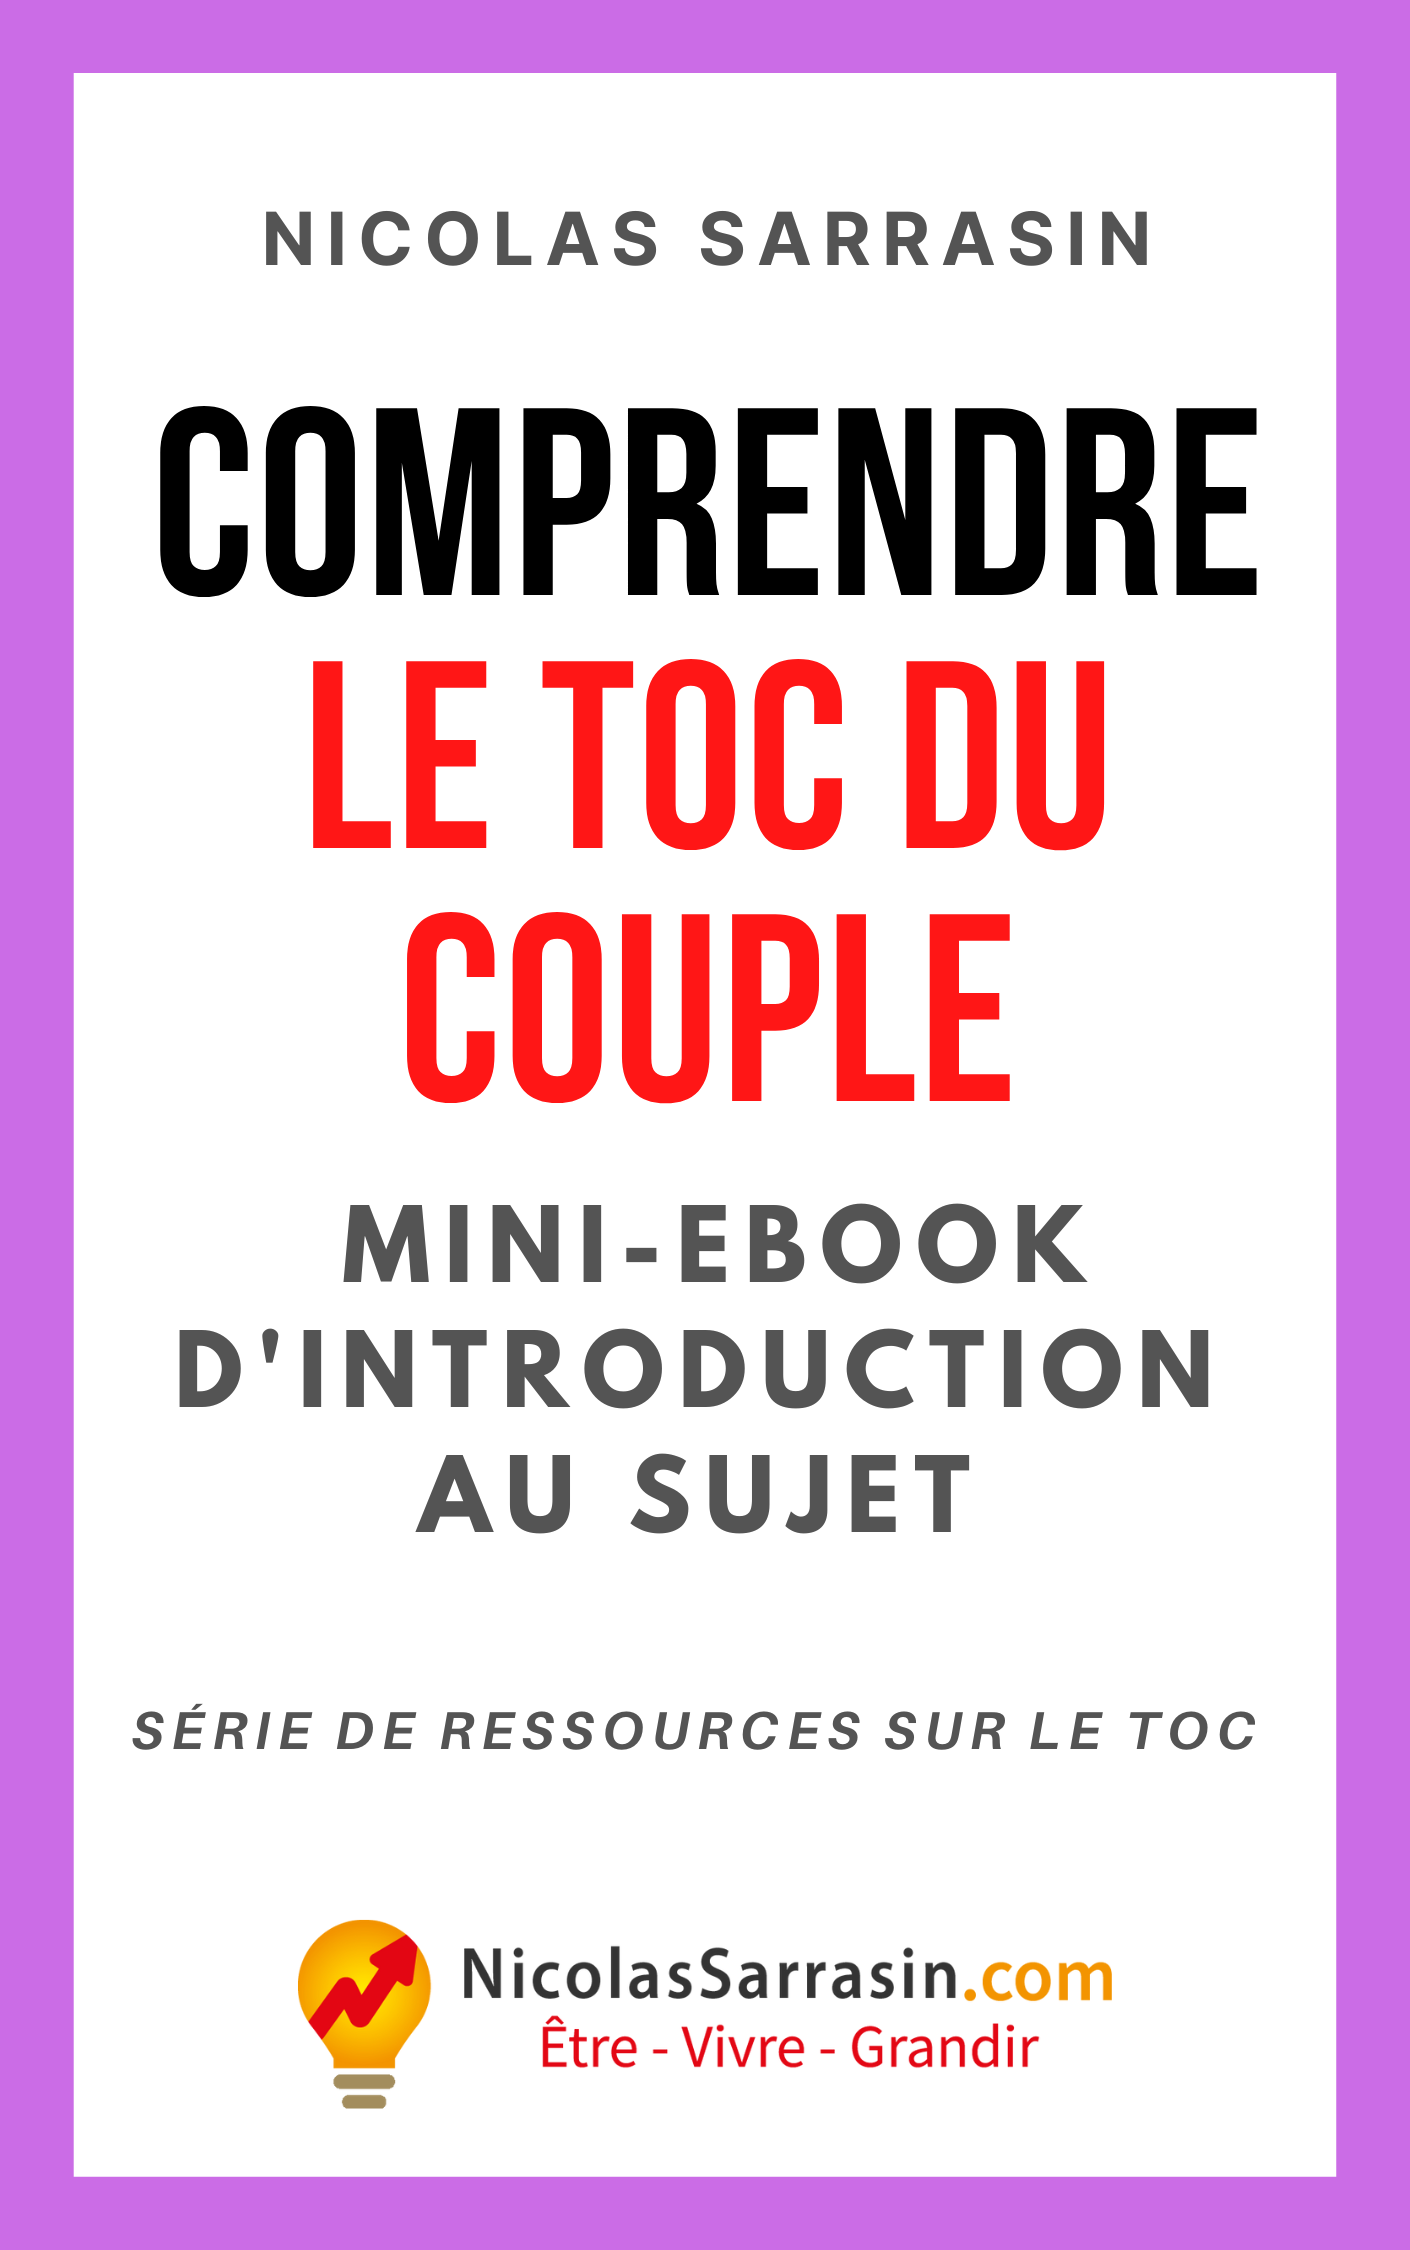 Mini-ebook de Nicolas Sarrasin sur le TOC du couple